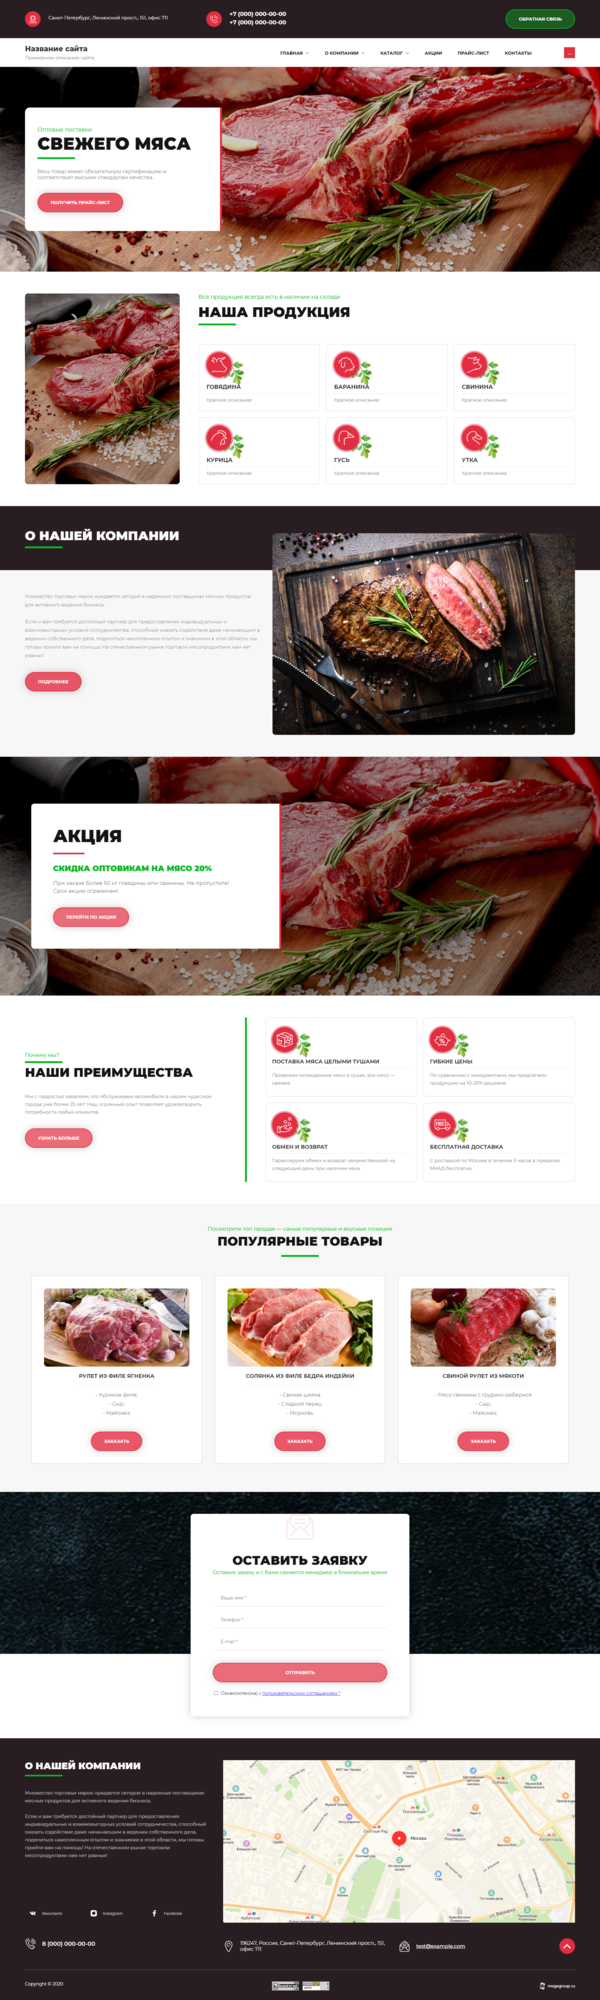 Готовый Сайт-Бизнес № 2716918 - Мясо и мясопродукты (Десктопная версия)